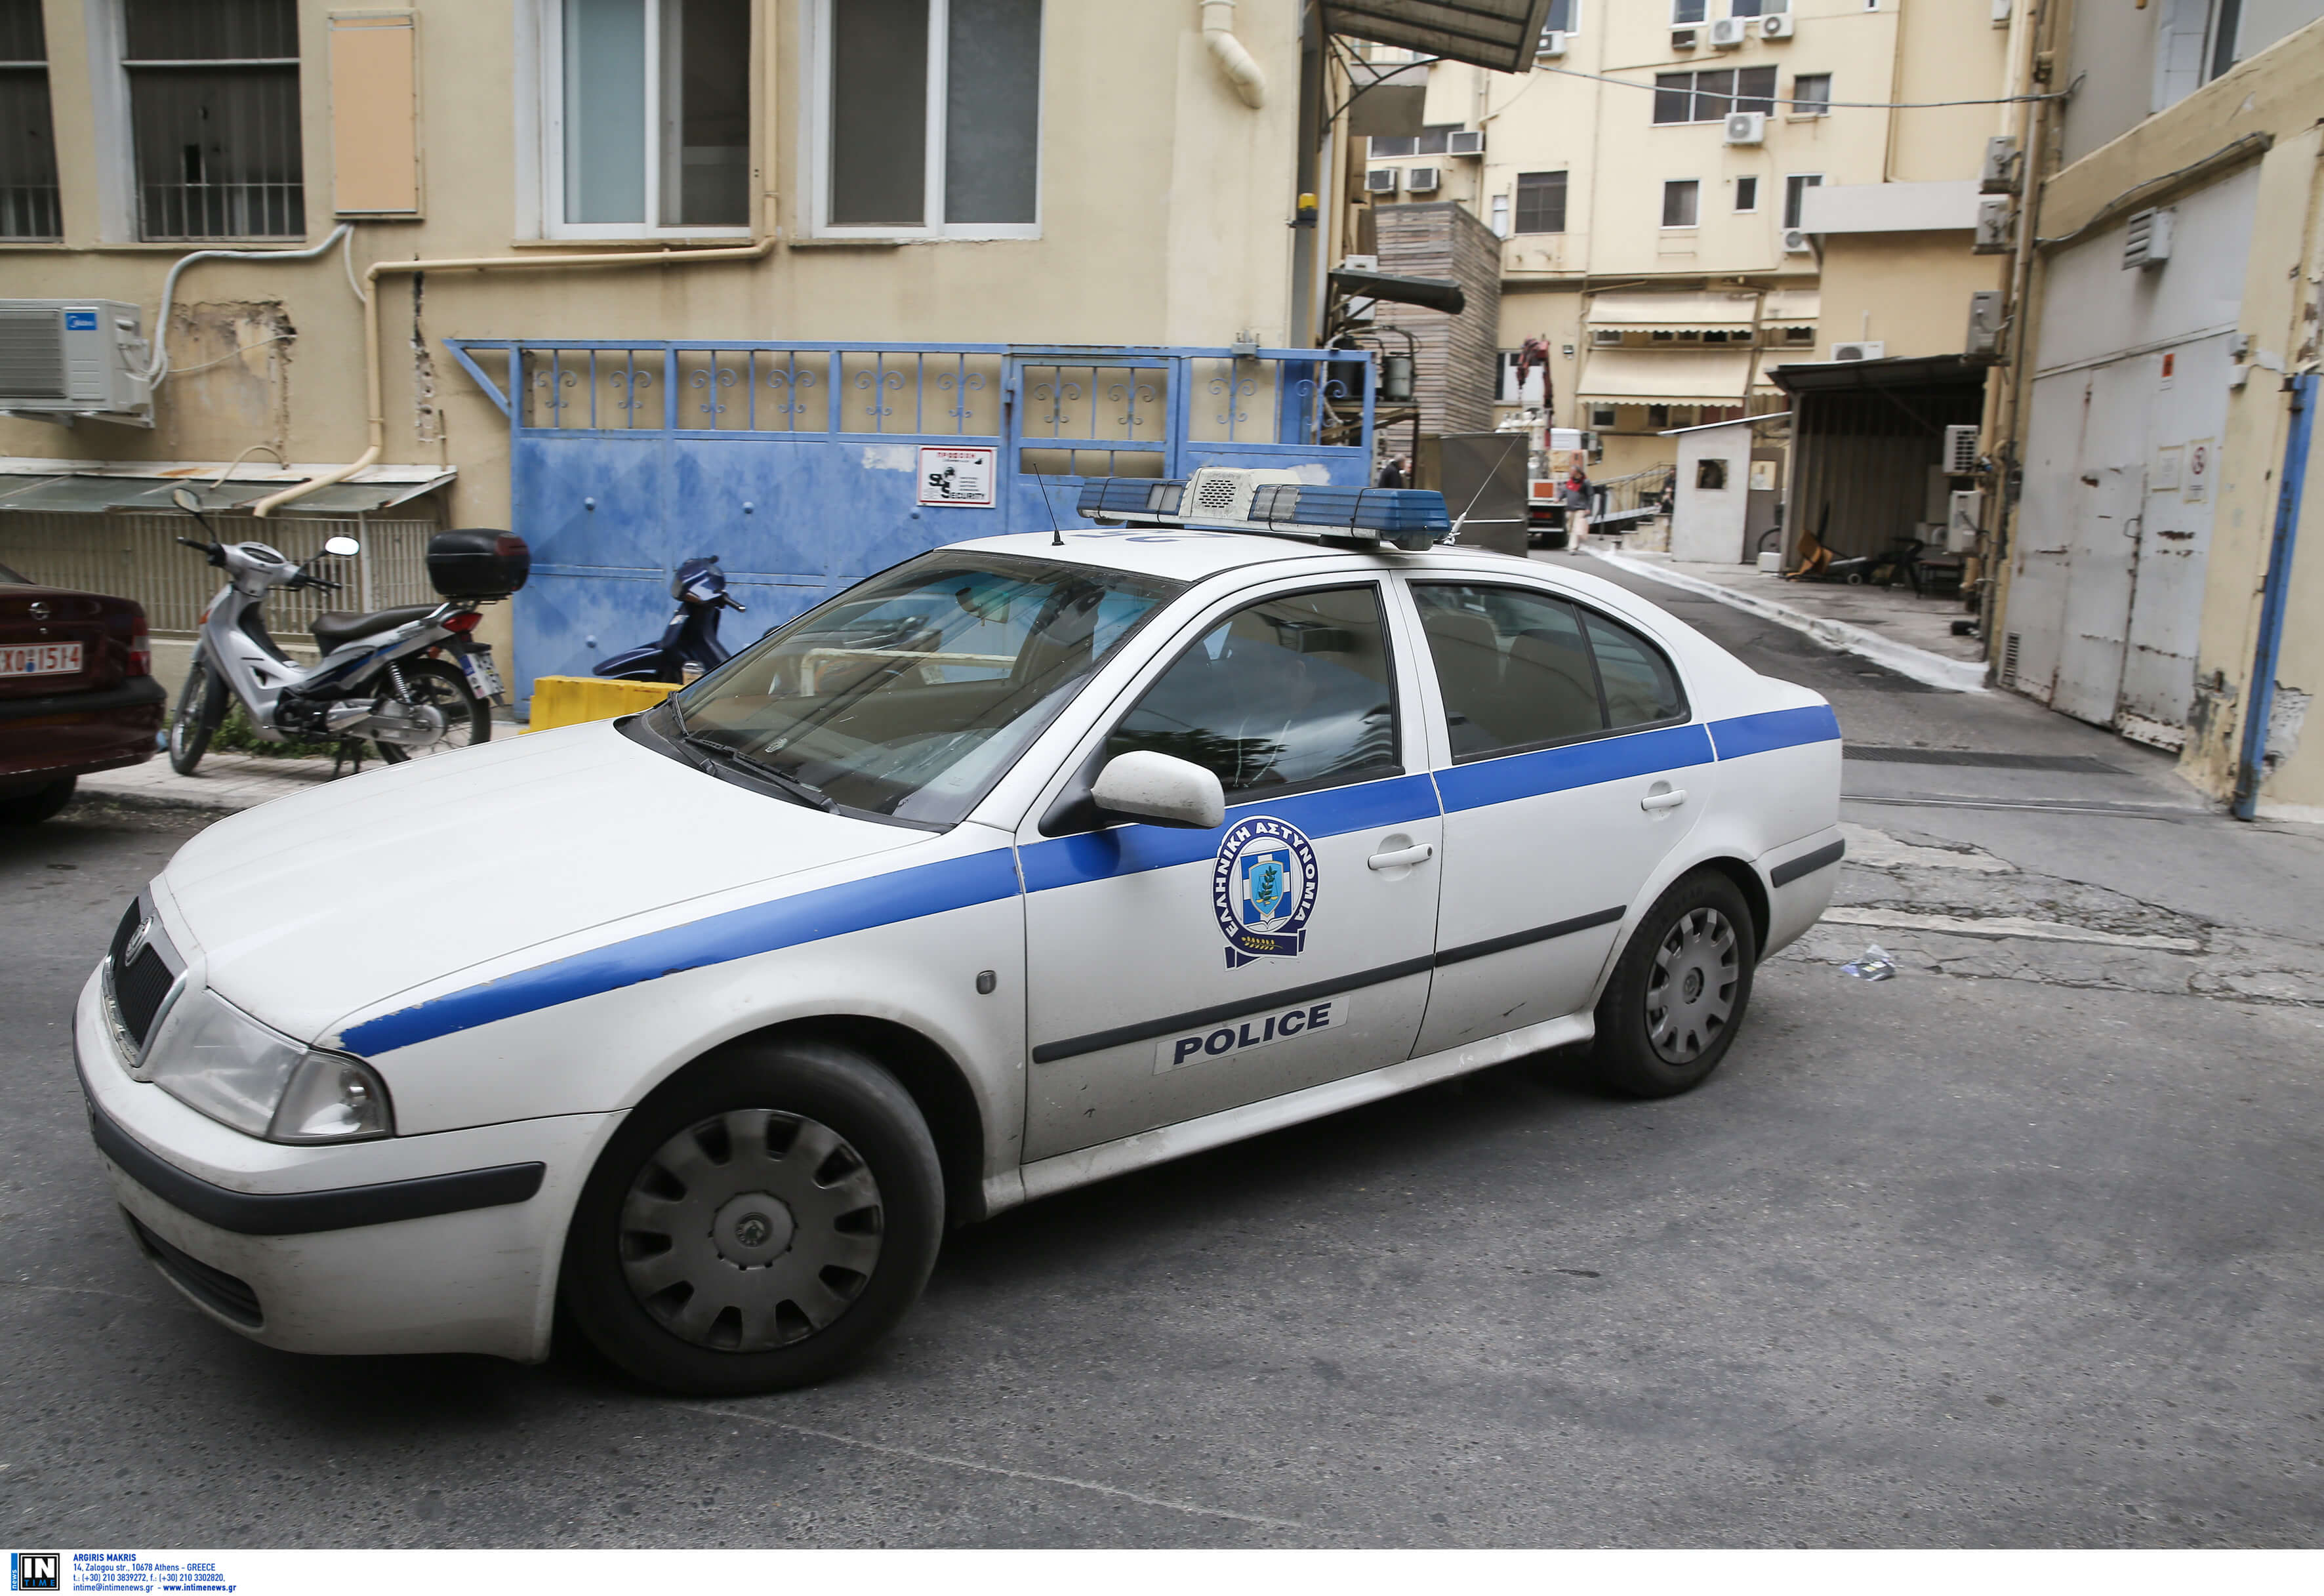 Νέο χτύπημα στην αλβανική μαφία – Συνελήφθησαν δύο άτομα από τη Δίωξη Ναρκωτικών